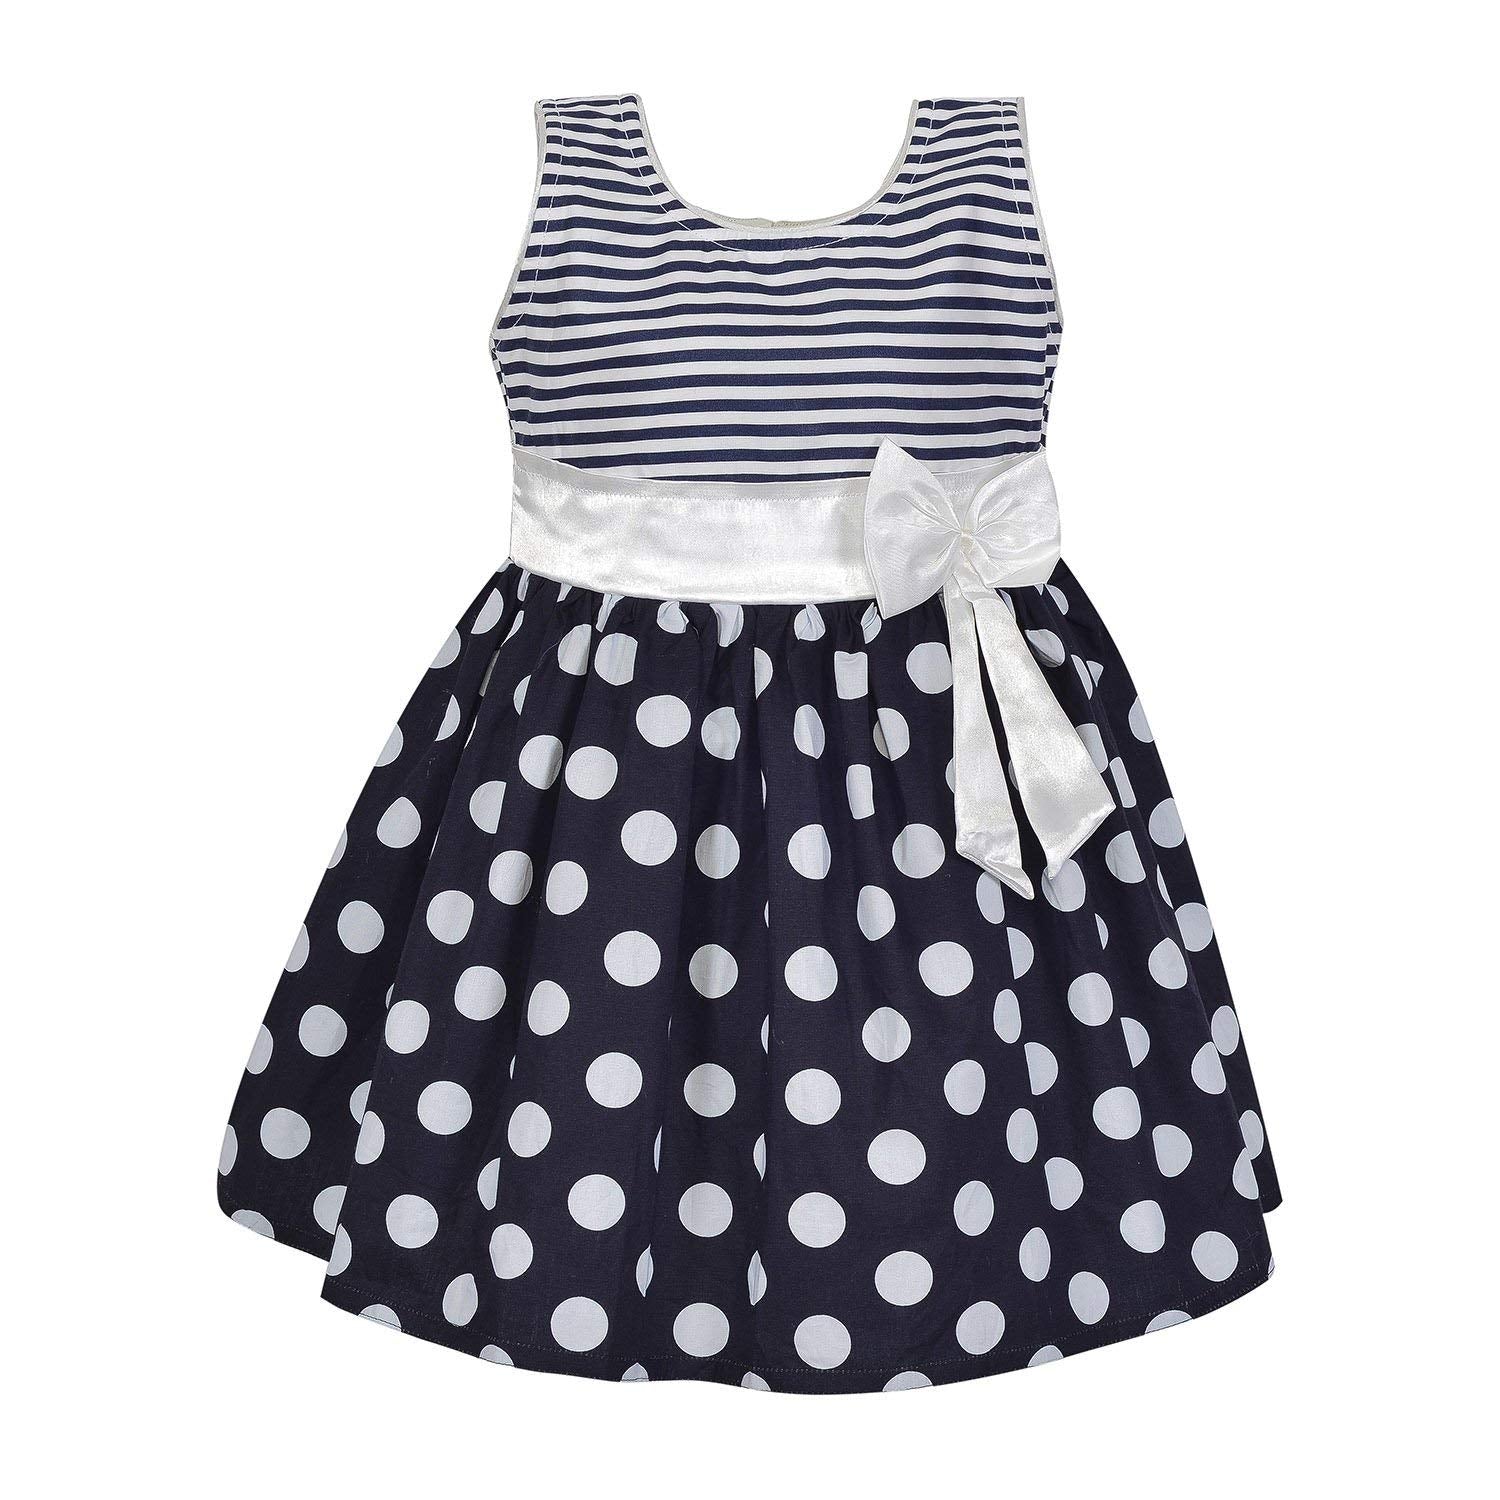 Baby Girls cotton Wear Frock ctn262nb - Wish Karo Cotton Wear - frocks Cotton Wear - baby dress